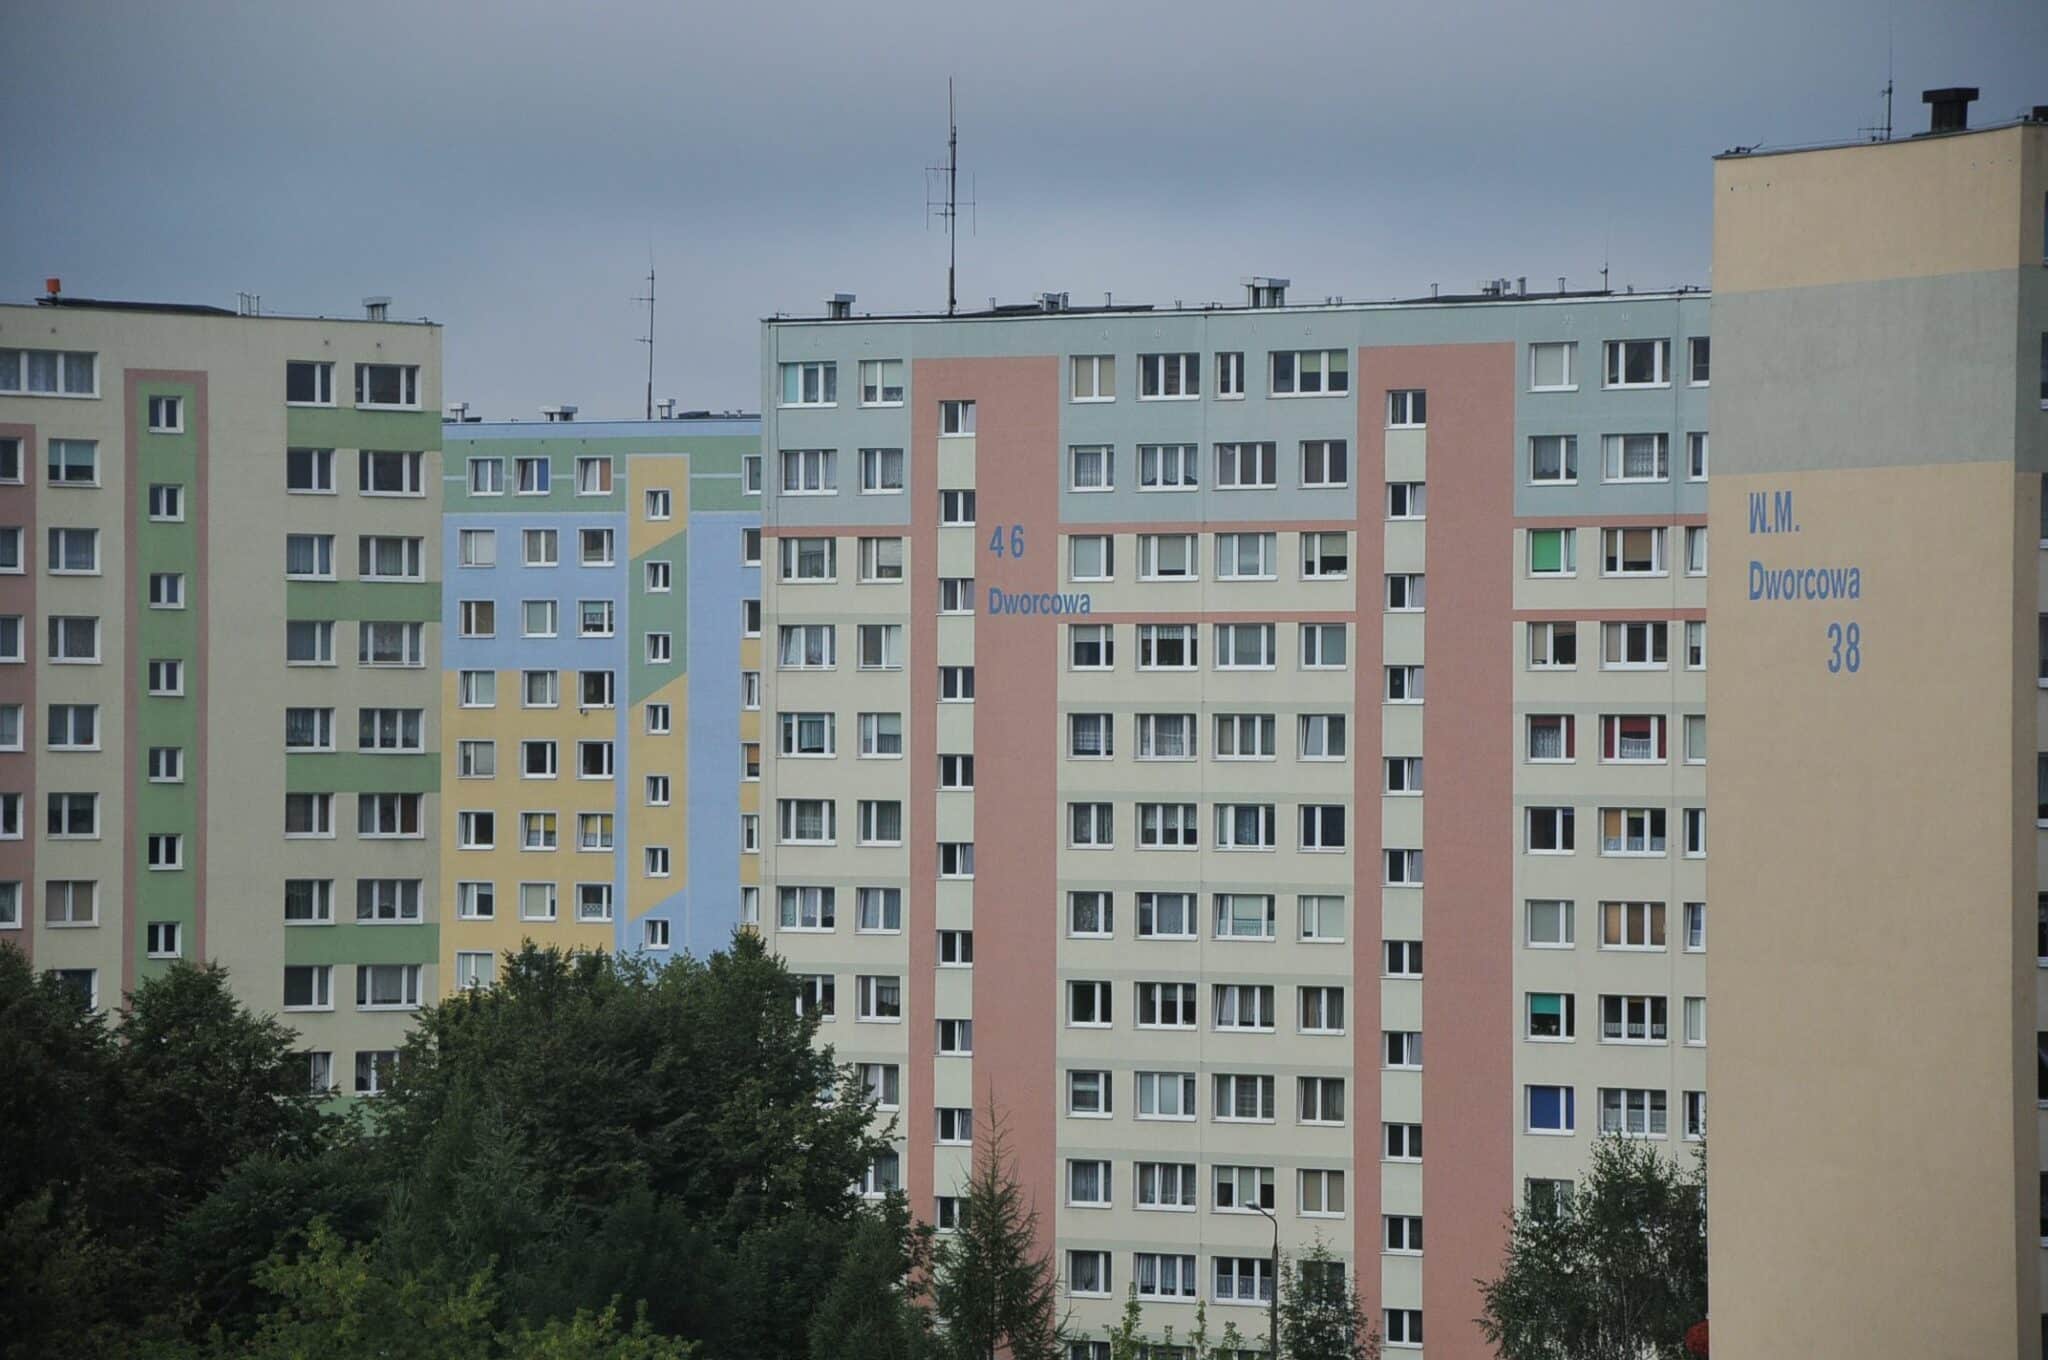 Lokatorzy olsztyńskich spółdzielni mieszkaniowych zapłacą więcej finanse Ostróda, zShowcase